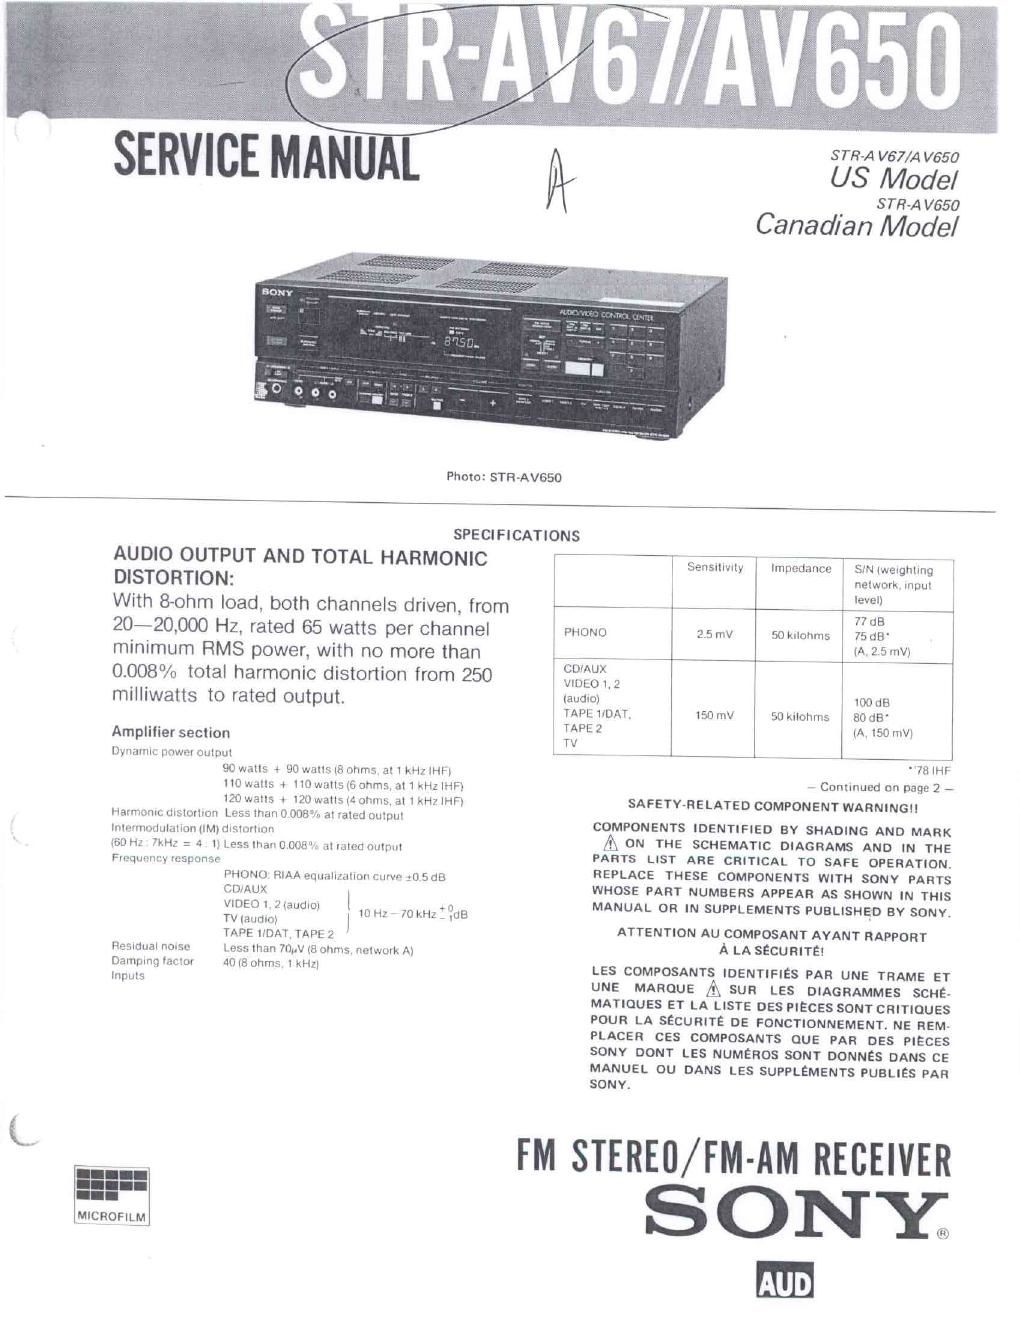 sony str av 650 service manual